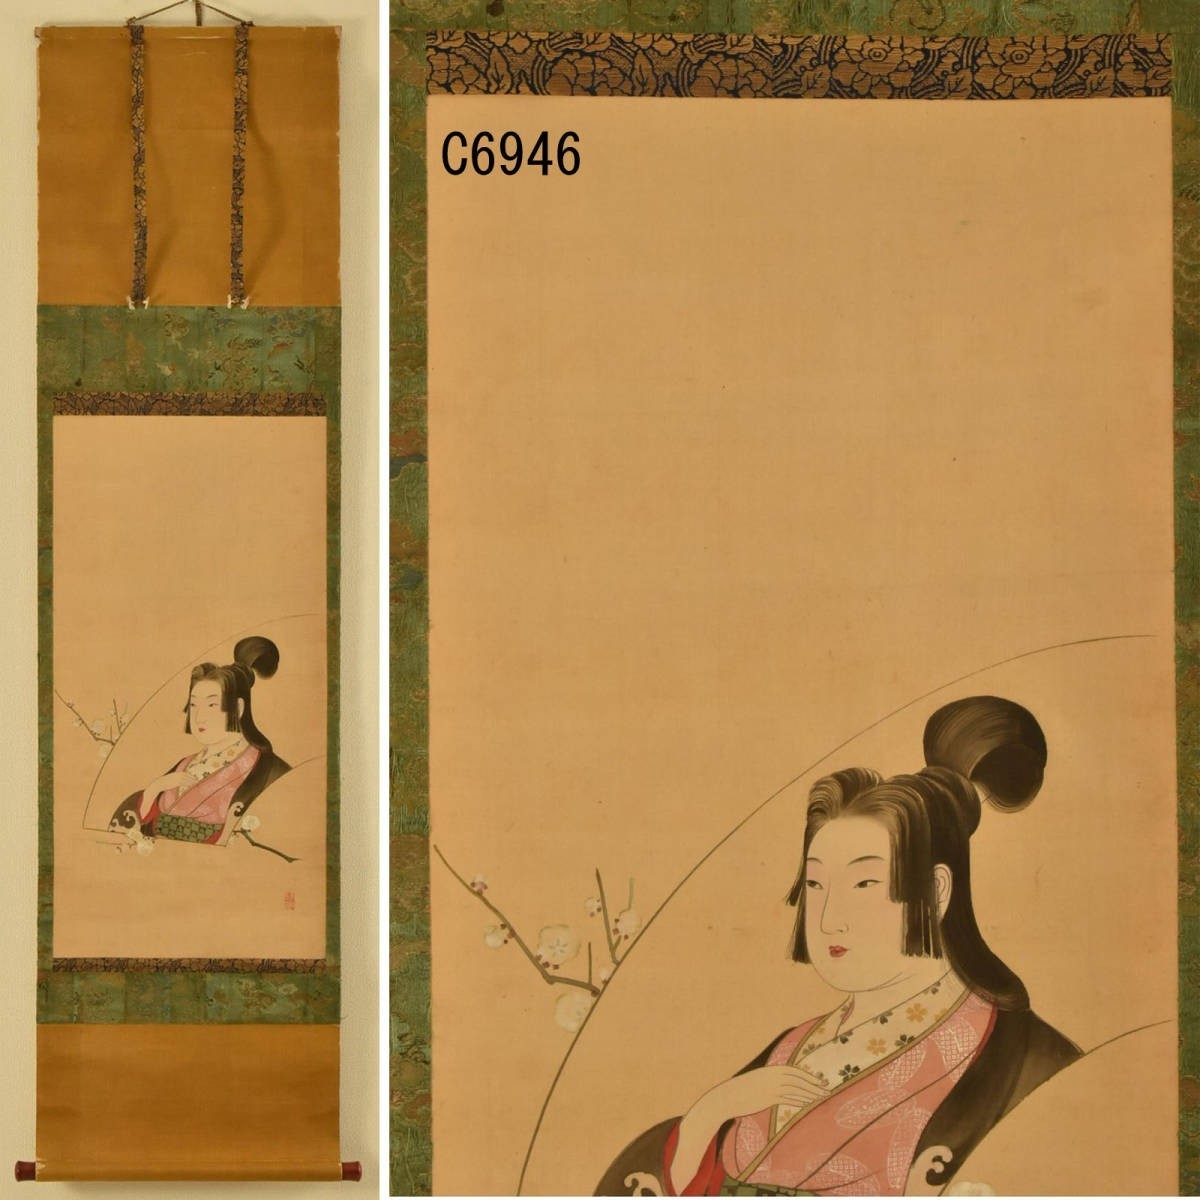 C06946 Parchemin suspendu belle femme : authentique, Peinture, Peinture japonaise, personne, Bodhisattva